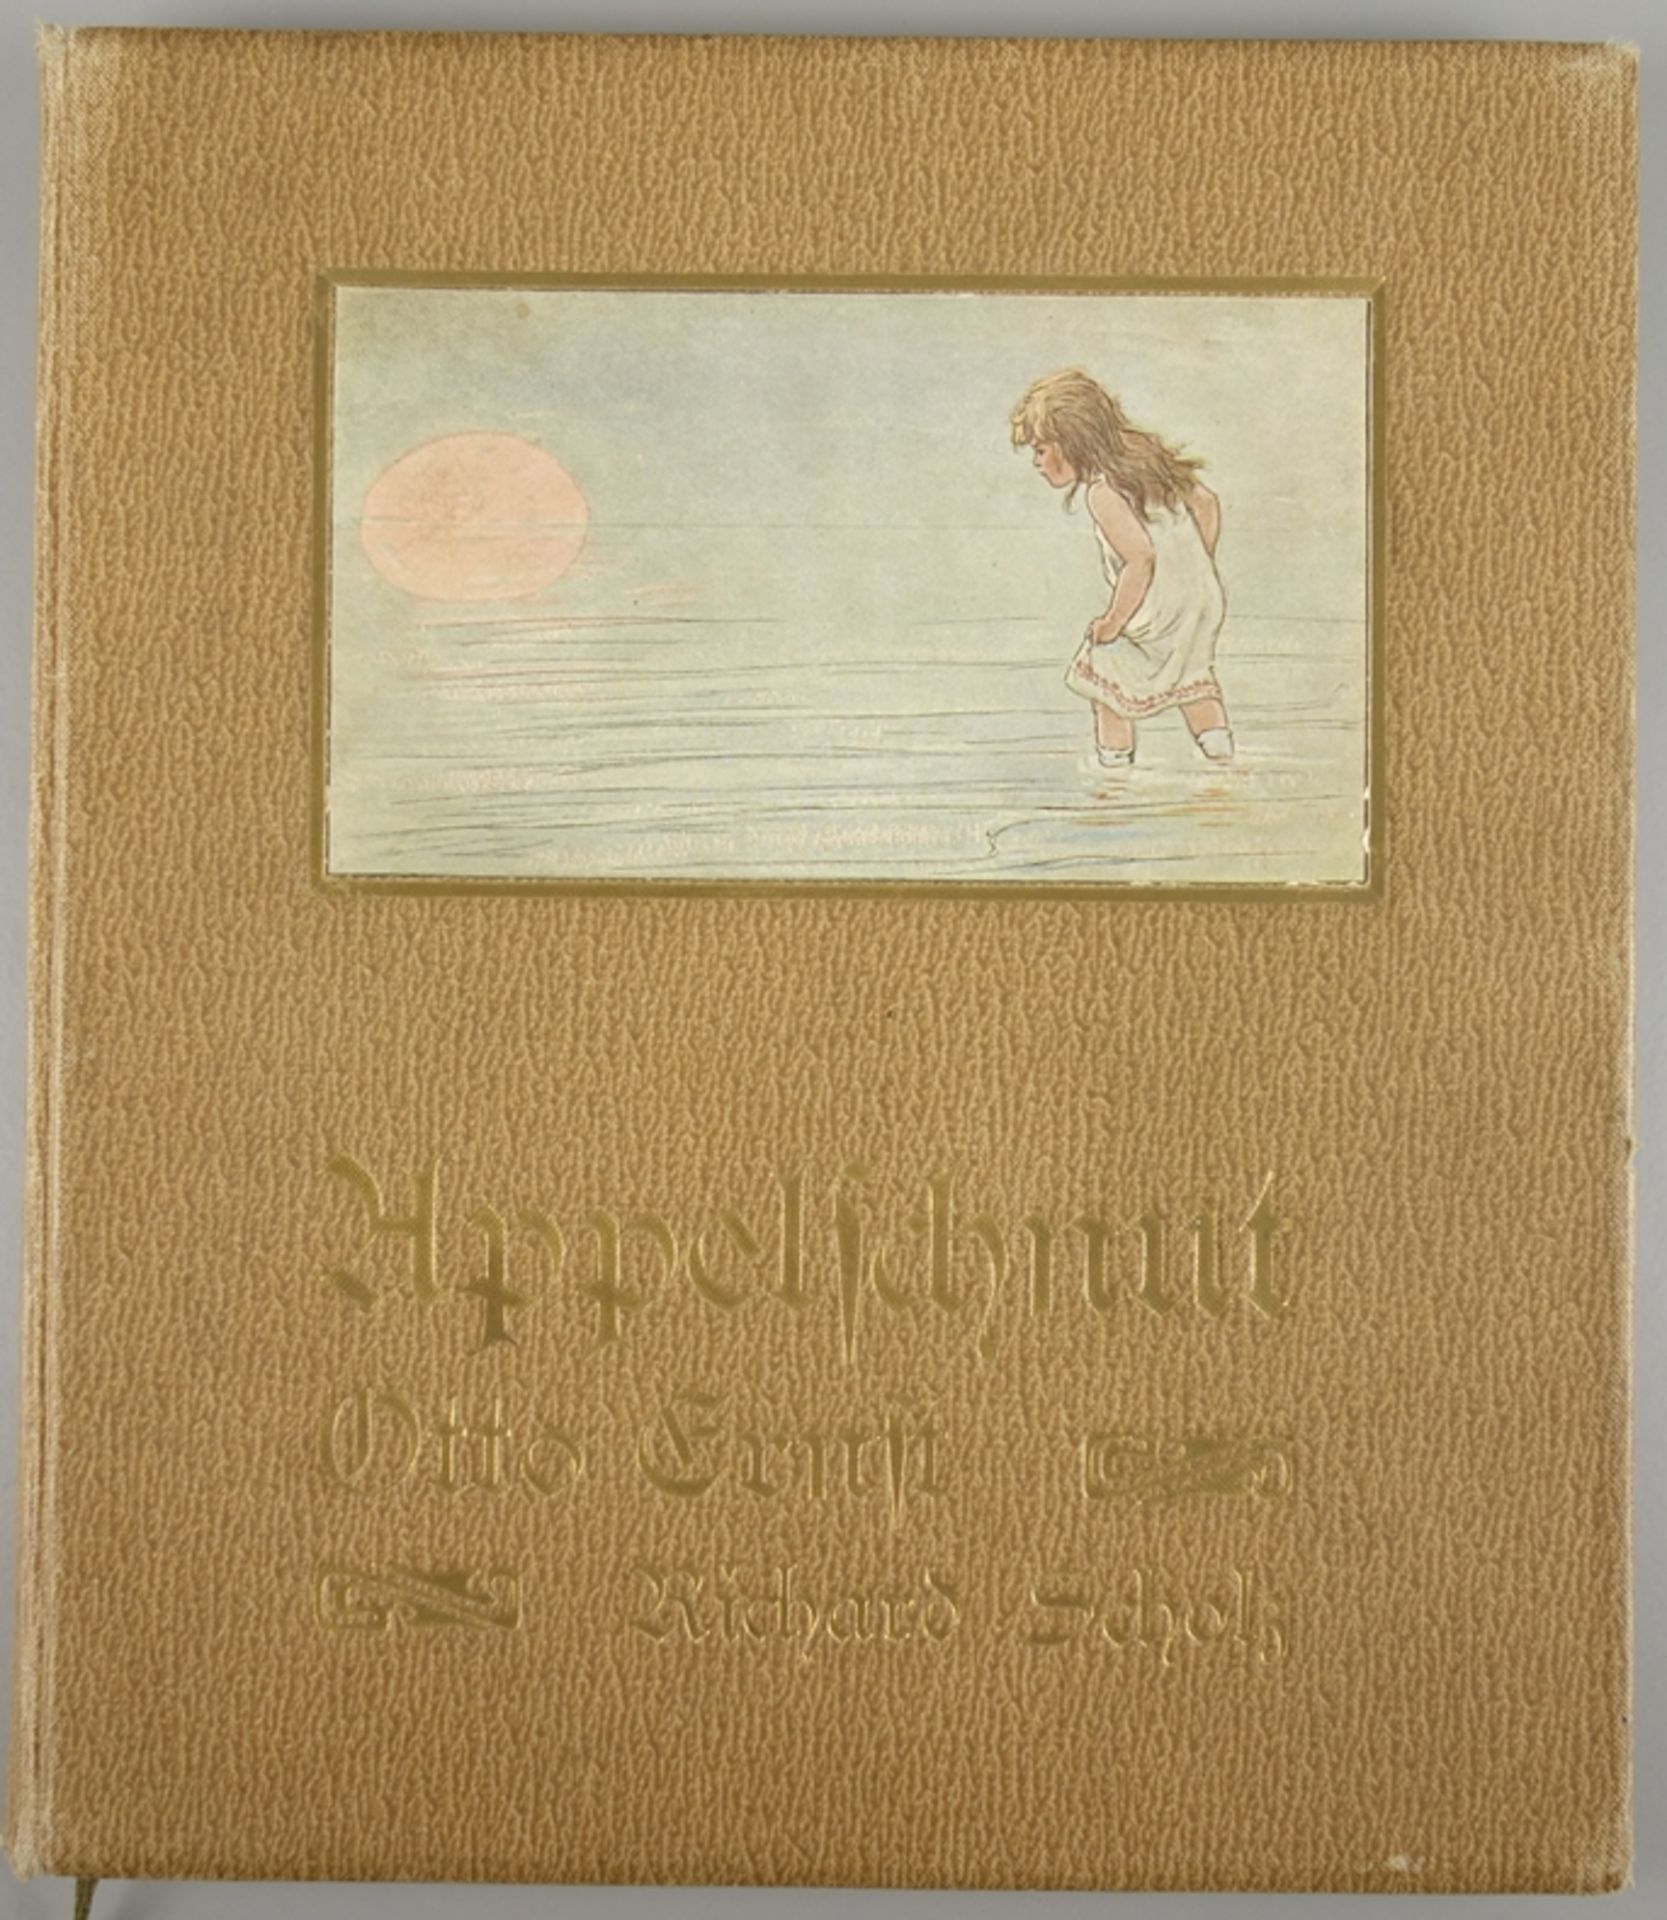 Appelschnut, Otto Ernst, Leipzig, 1908